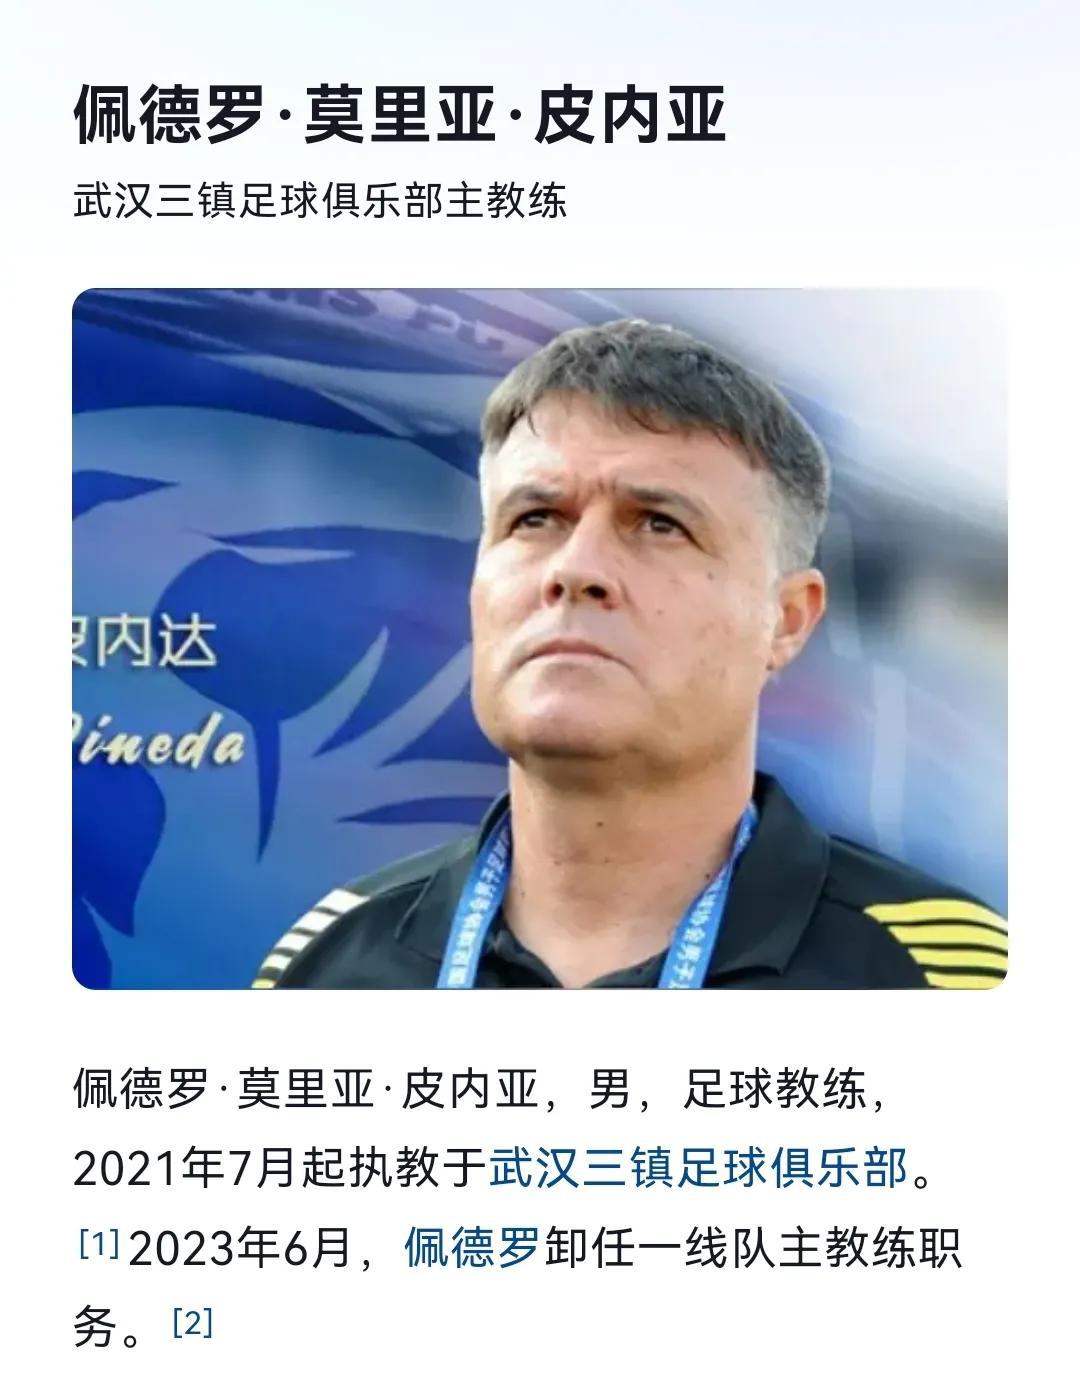 给河南队寻找主教练

给河南队推荐一位主教练，武汉三镇队前主帅佩德罗。2023年